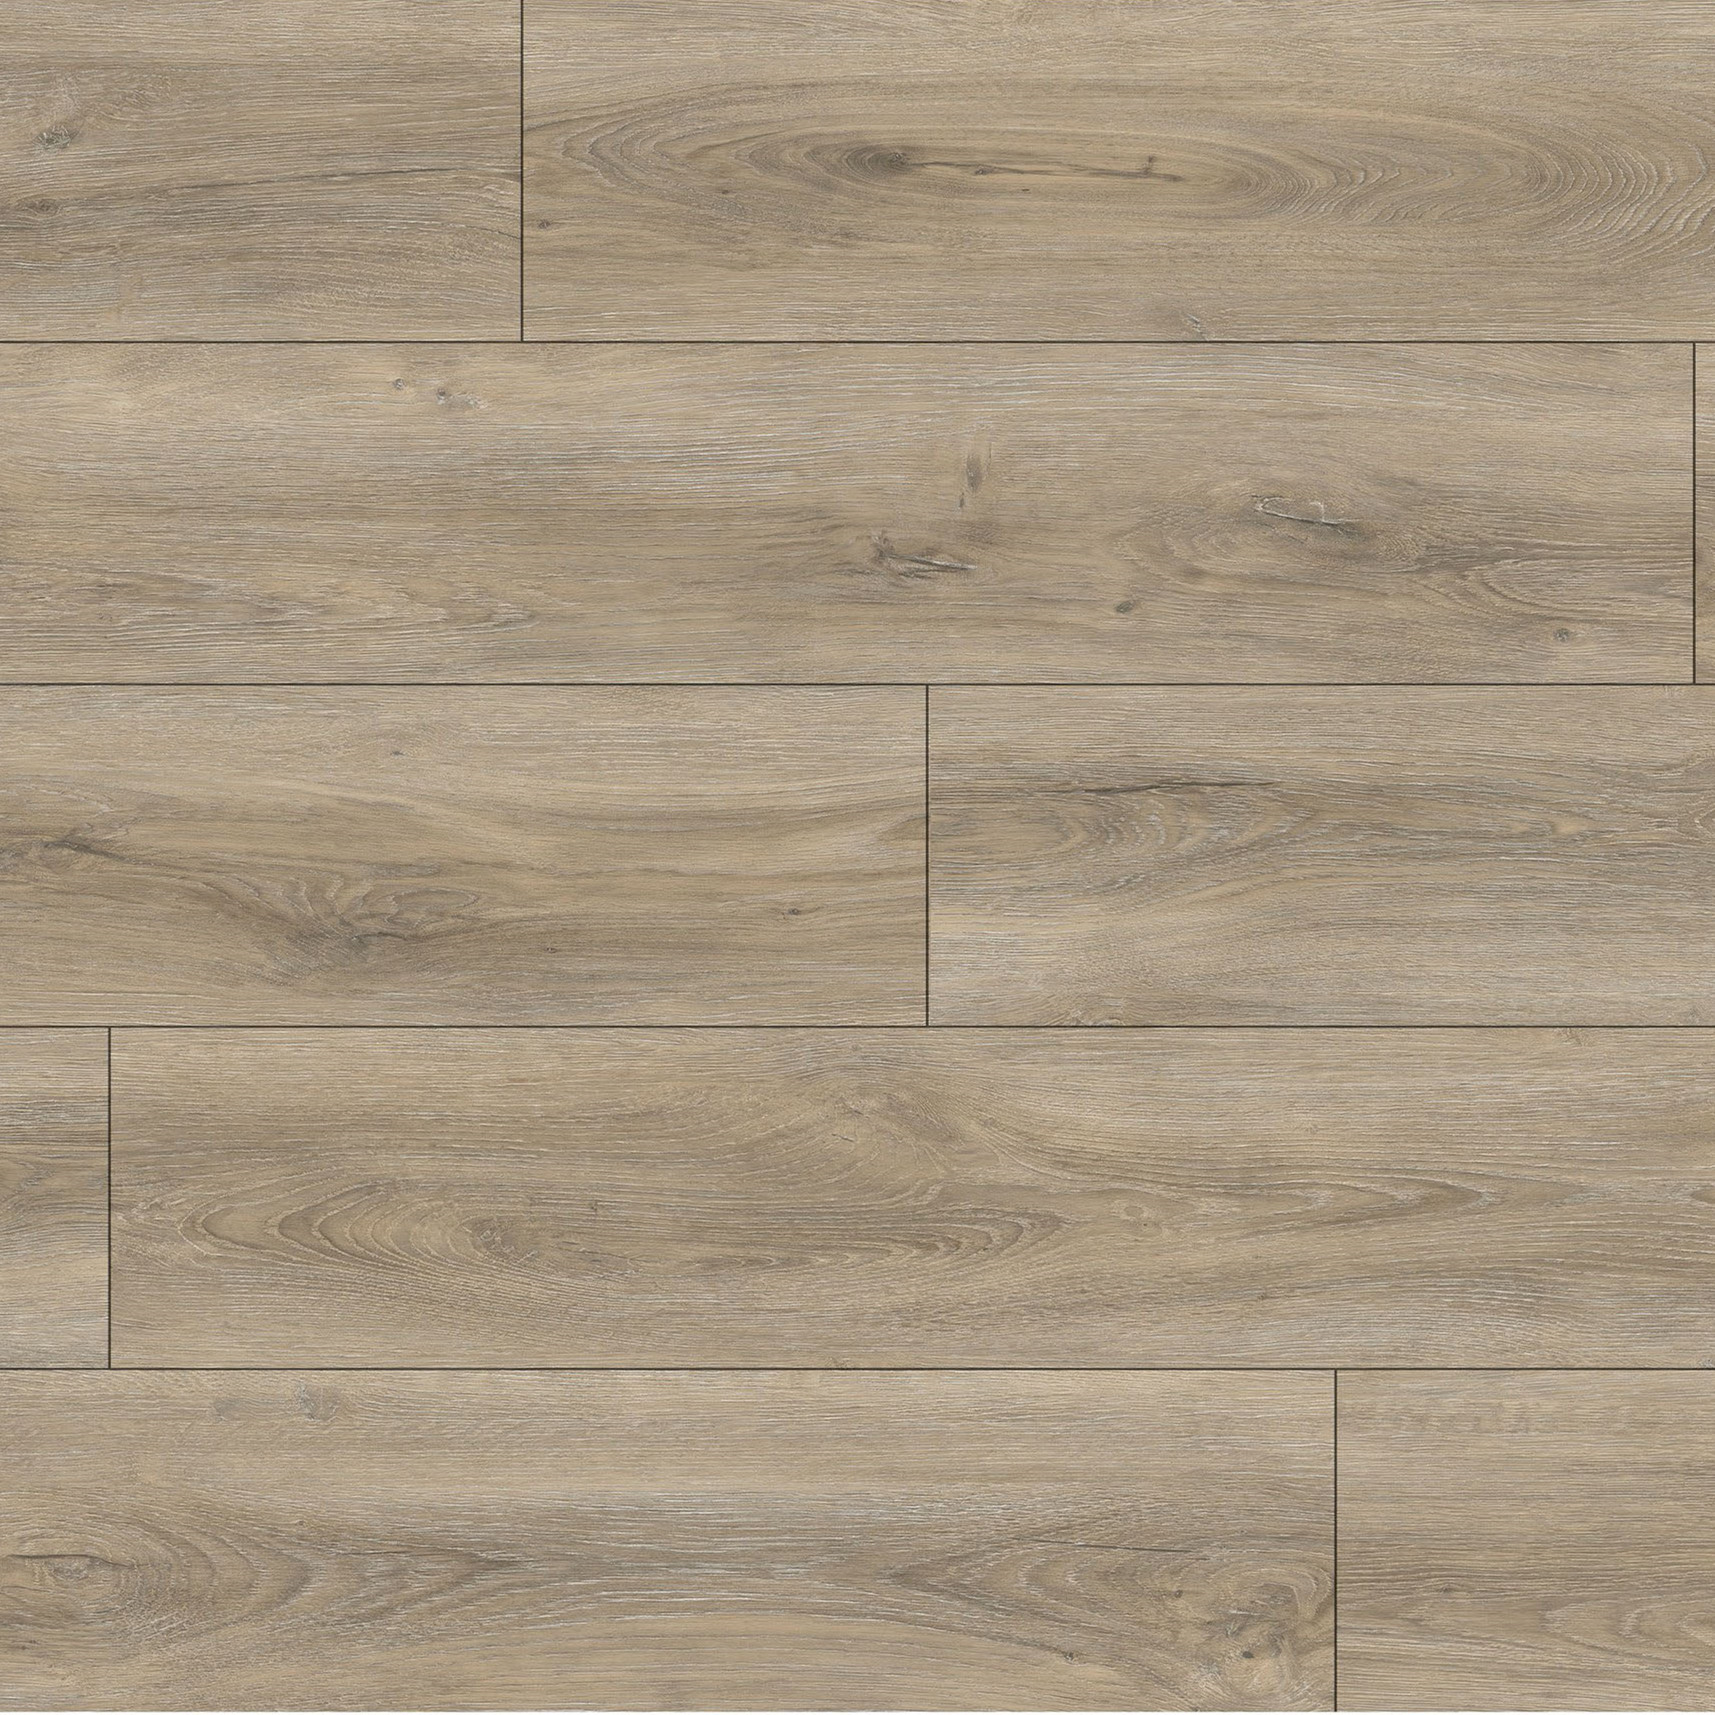 OEM Customized Hard Timber Flooring -
 Kangton Natural Oak Rigid SPC Flooring with Cheap Price – Kangton